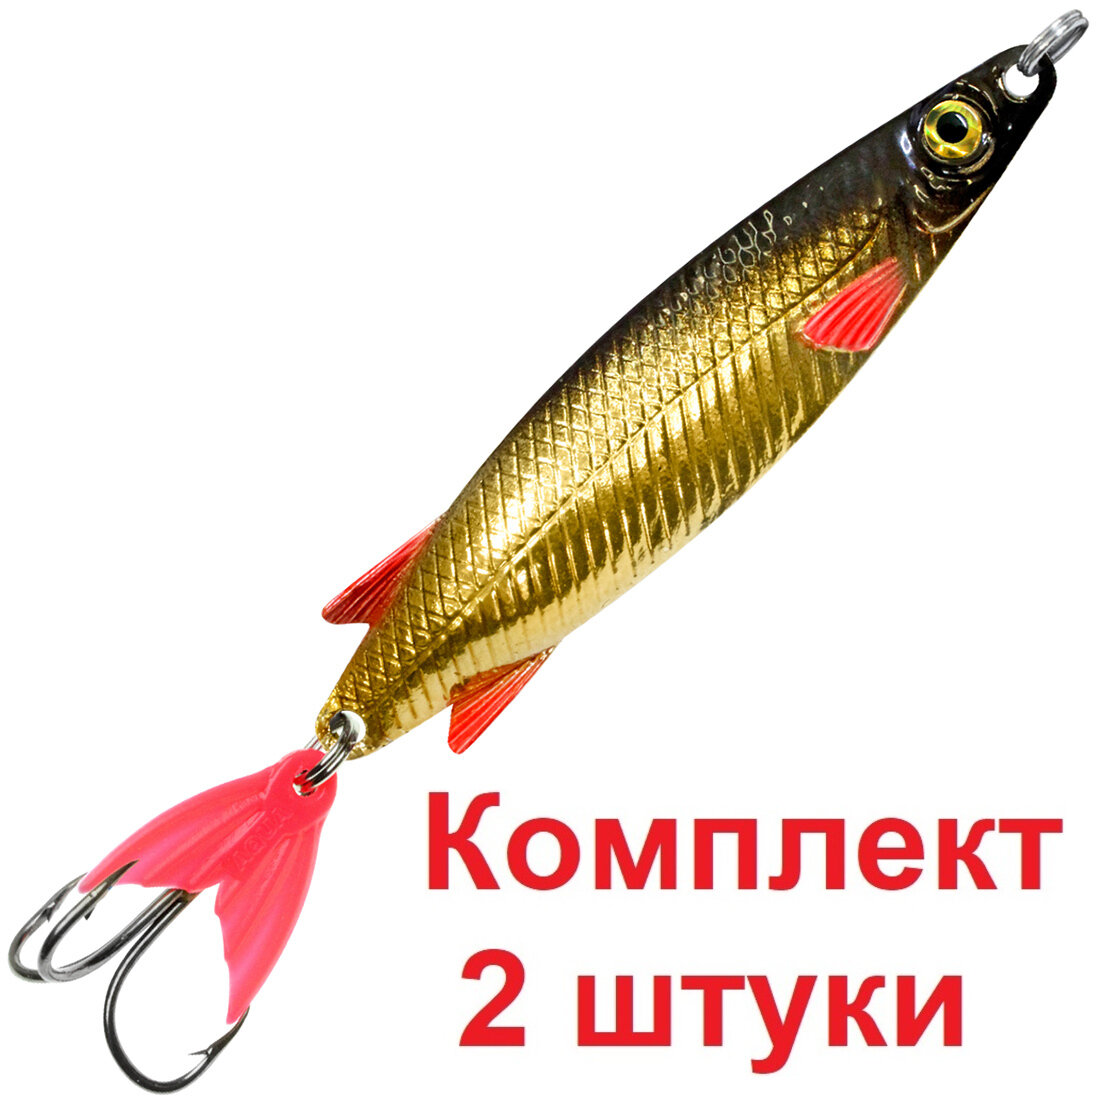 Блесна для рыбалки AQUA тобик 60,0mm, вес - 11,0g цвет 02 (золото, серебро, черный металлик, 2 штуки в комплекте